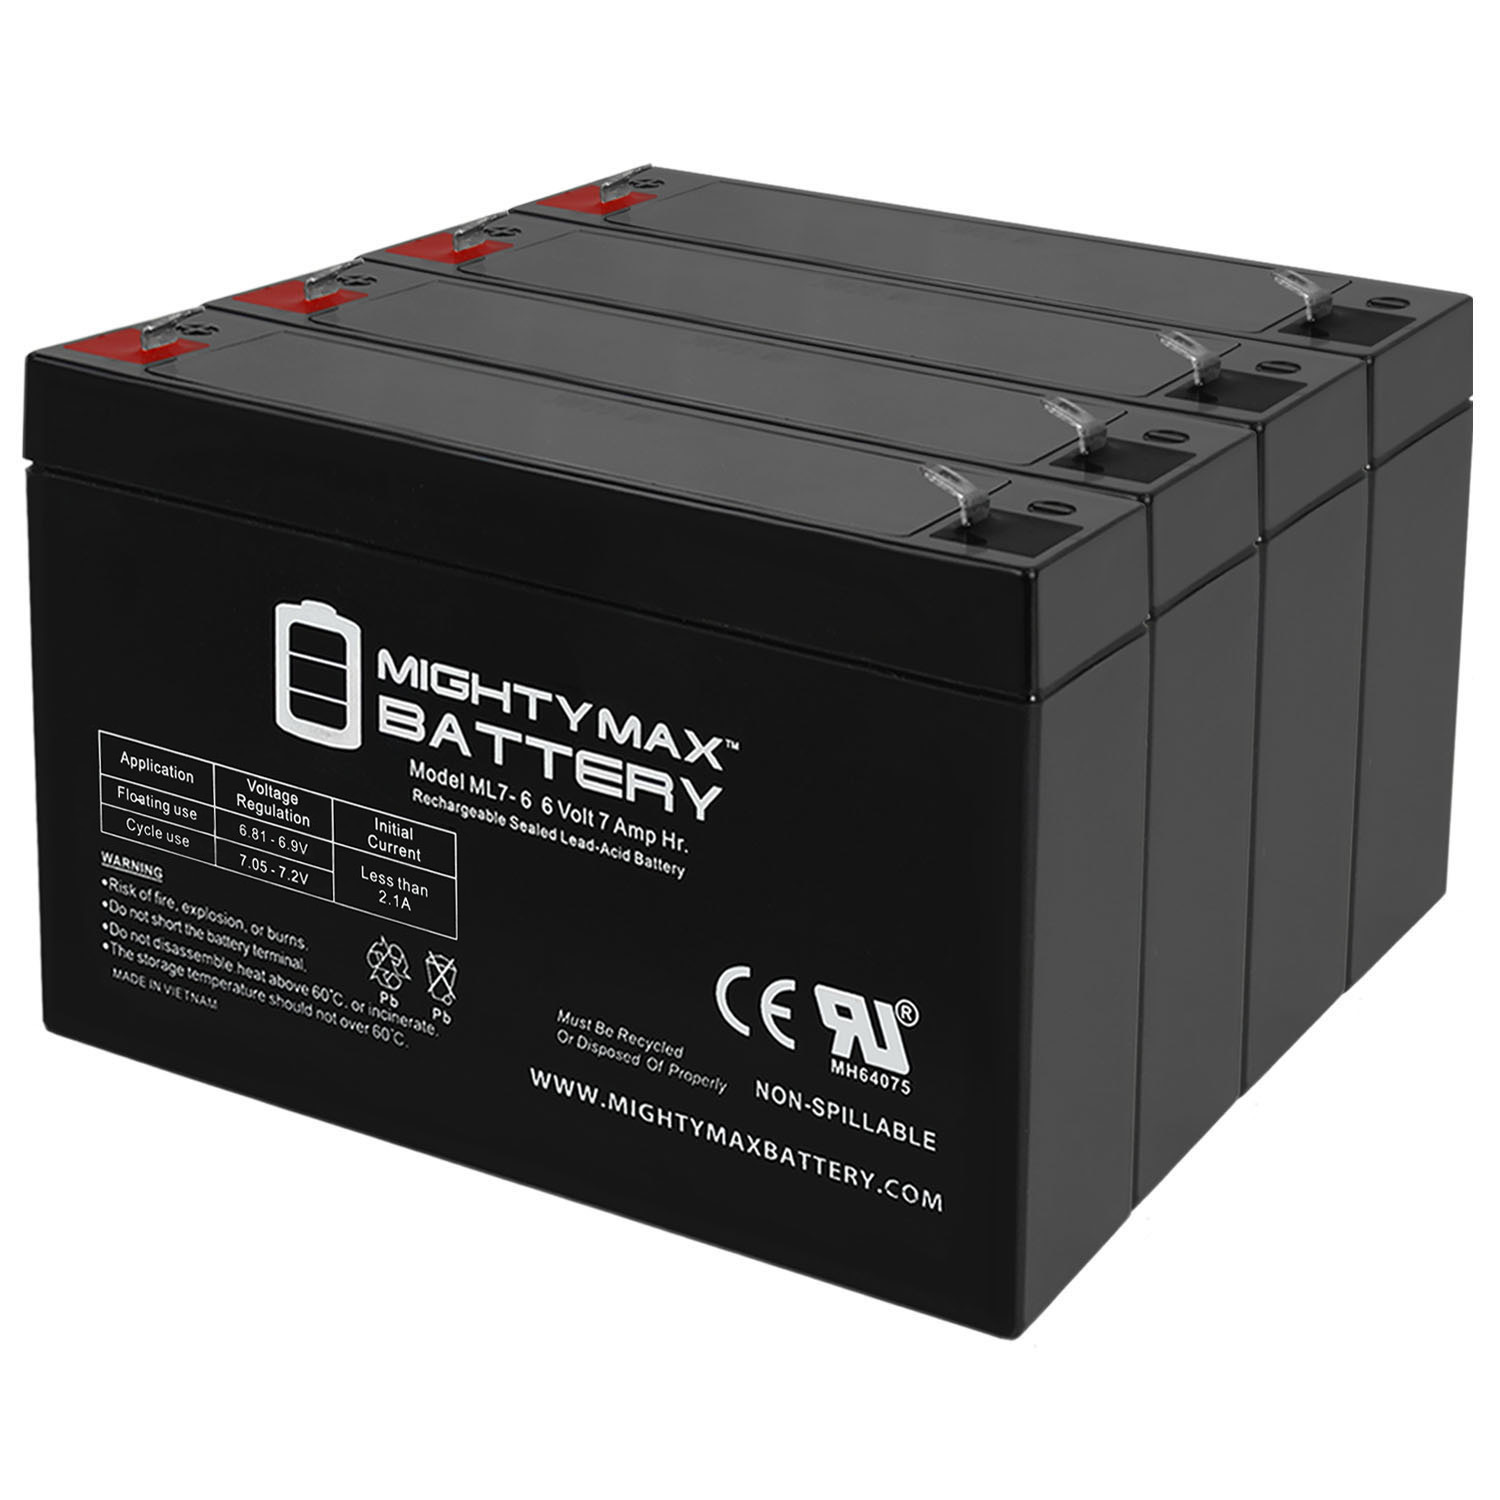 6V 7Ah SLA Replacement Battery for Emergi-Lite 2Fl1 - 4 Pack